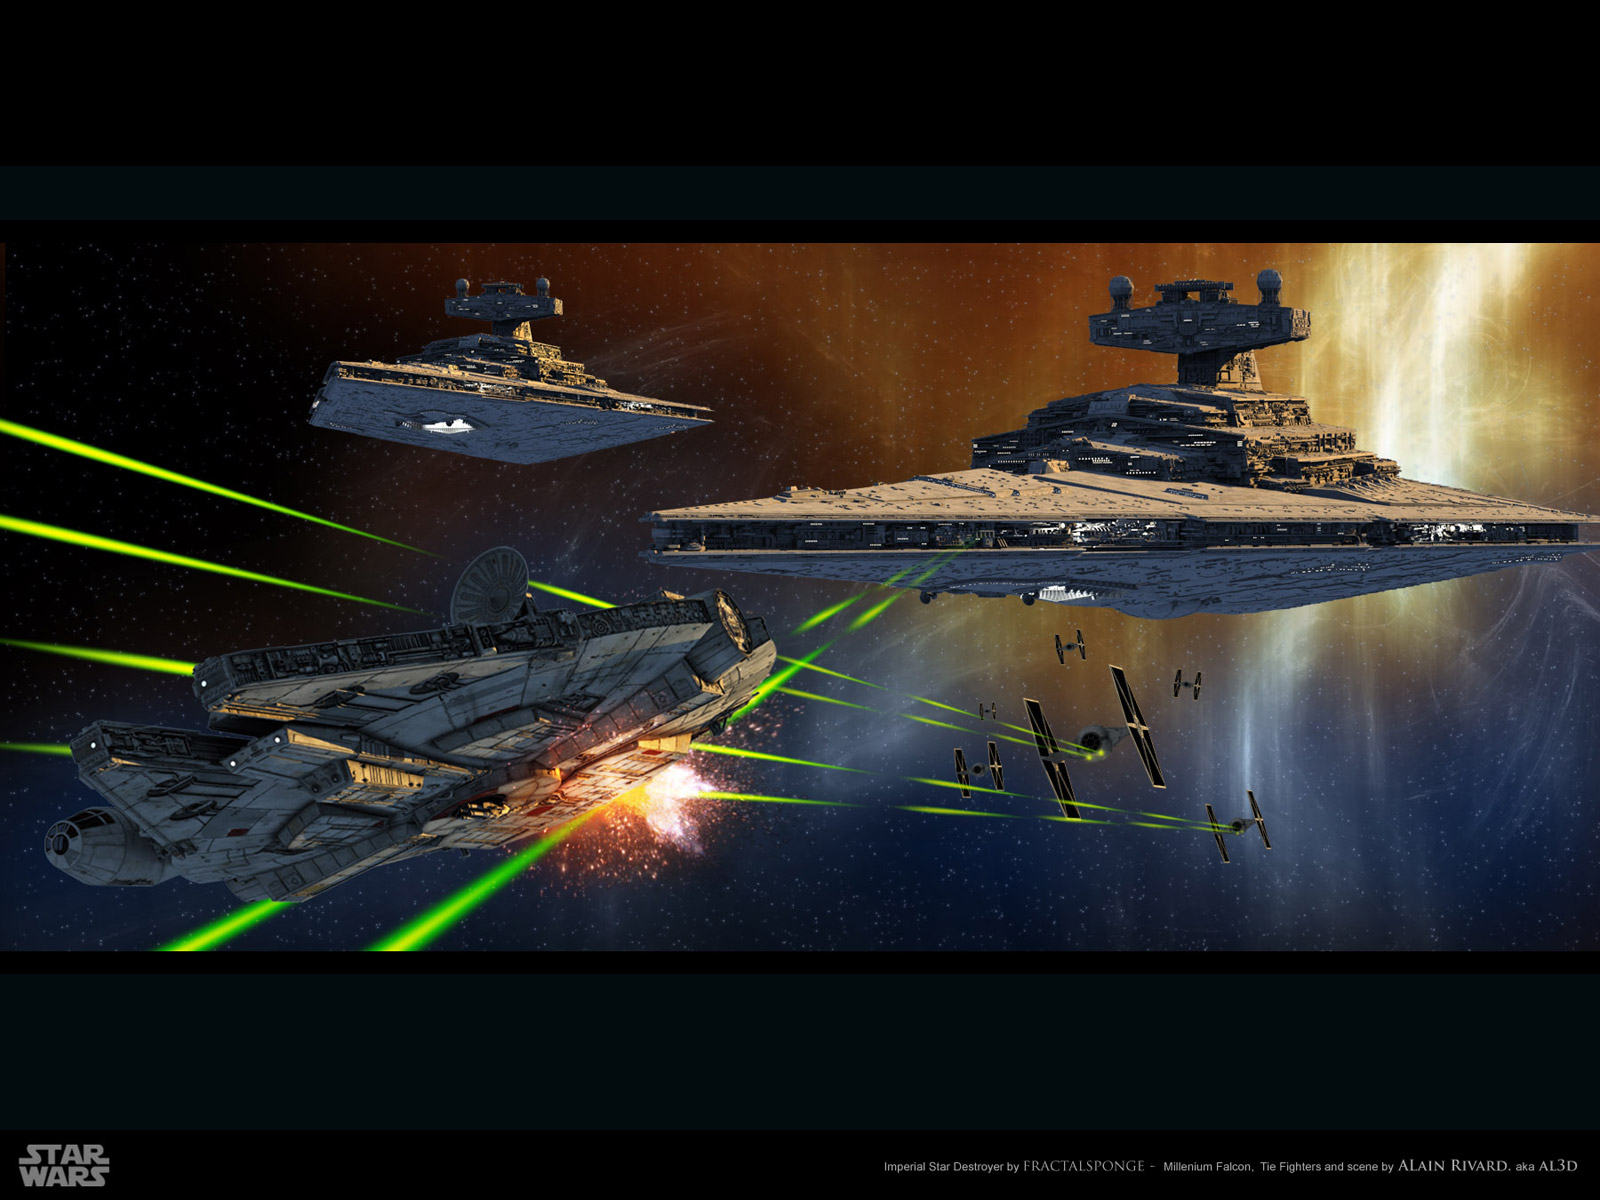 Star Wars Millennium Falcon Star Destroyer - HD Wallpaper 